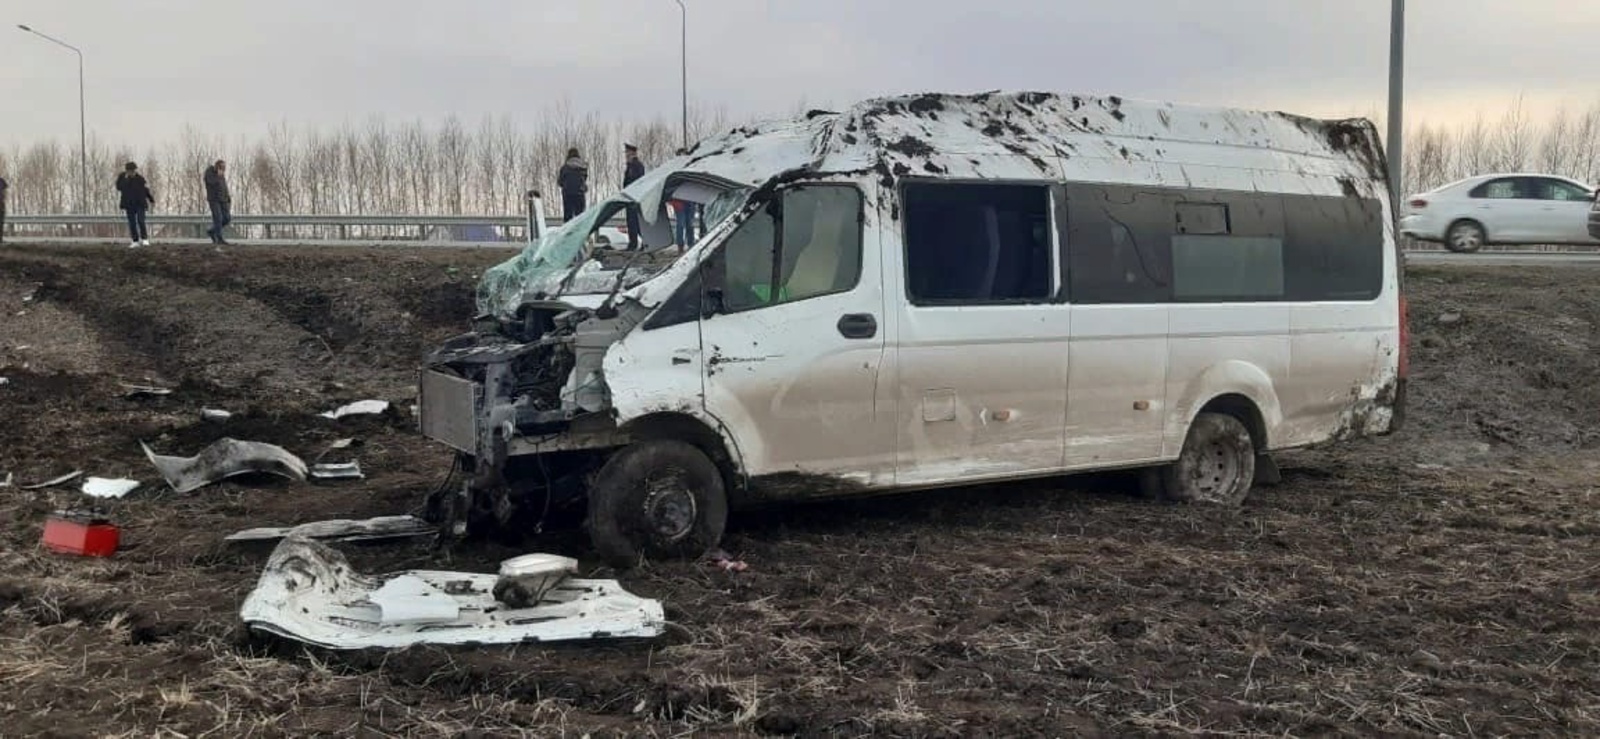 Маршрутка «Ишимбай-Уфа» попала в аварию, есть пострадавшие